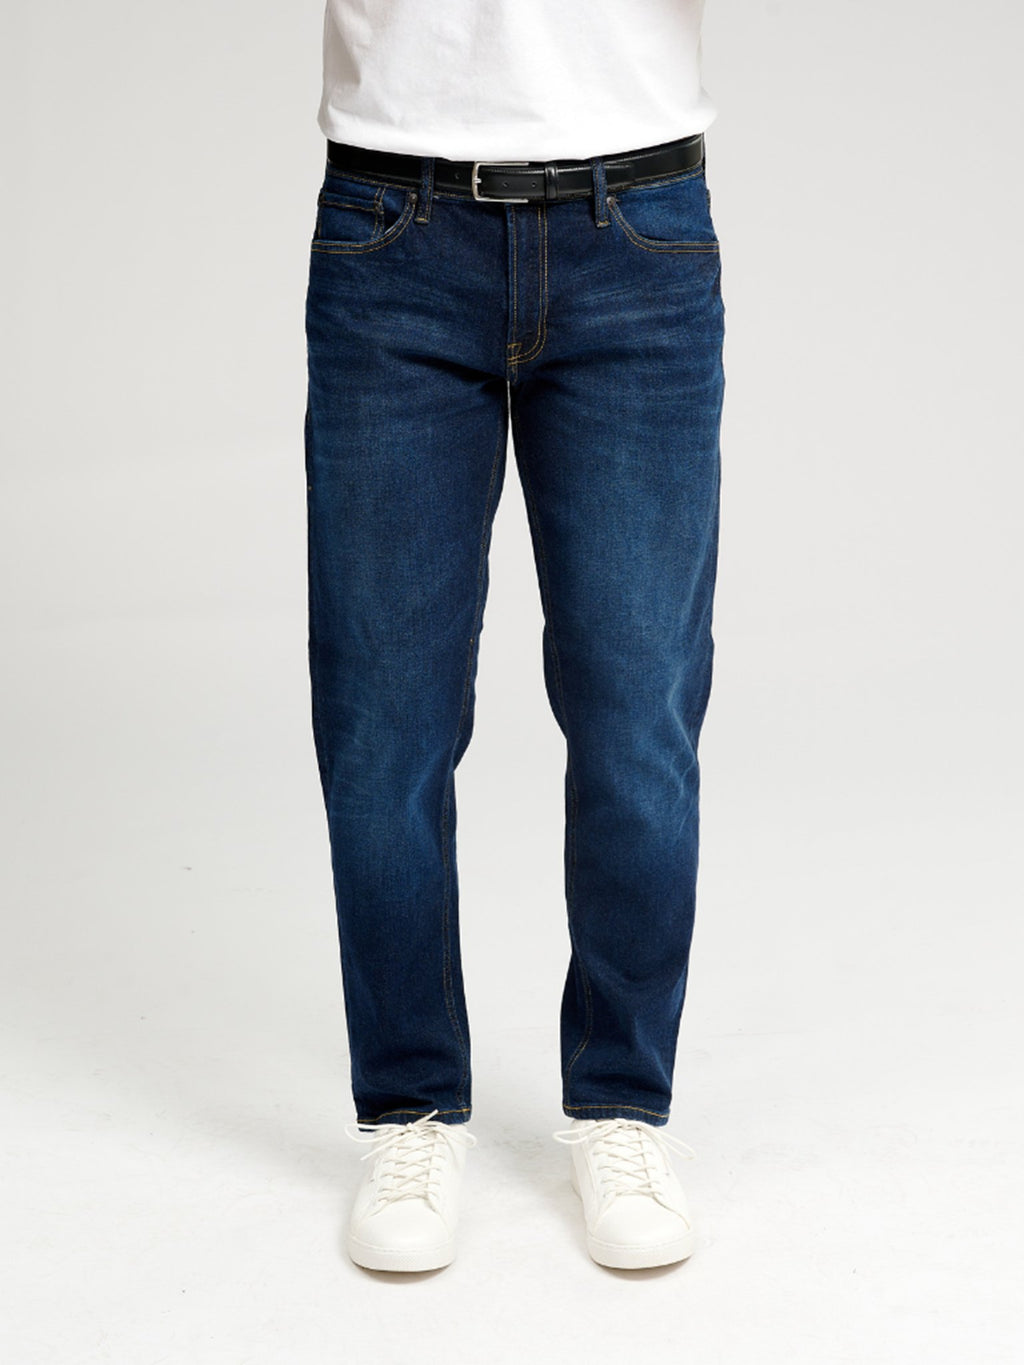 The Original Performance Jeans (regulär) - dunkelblauer Jeans